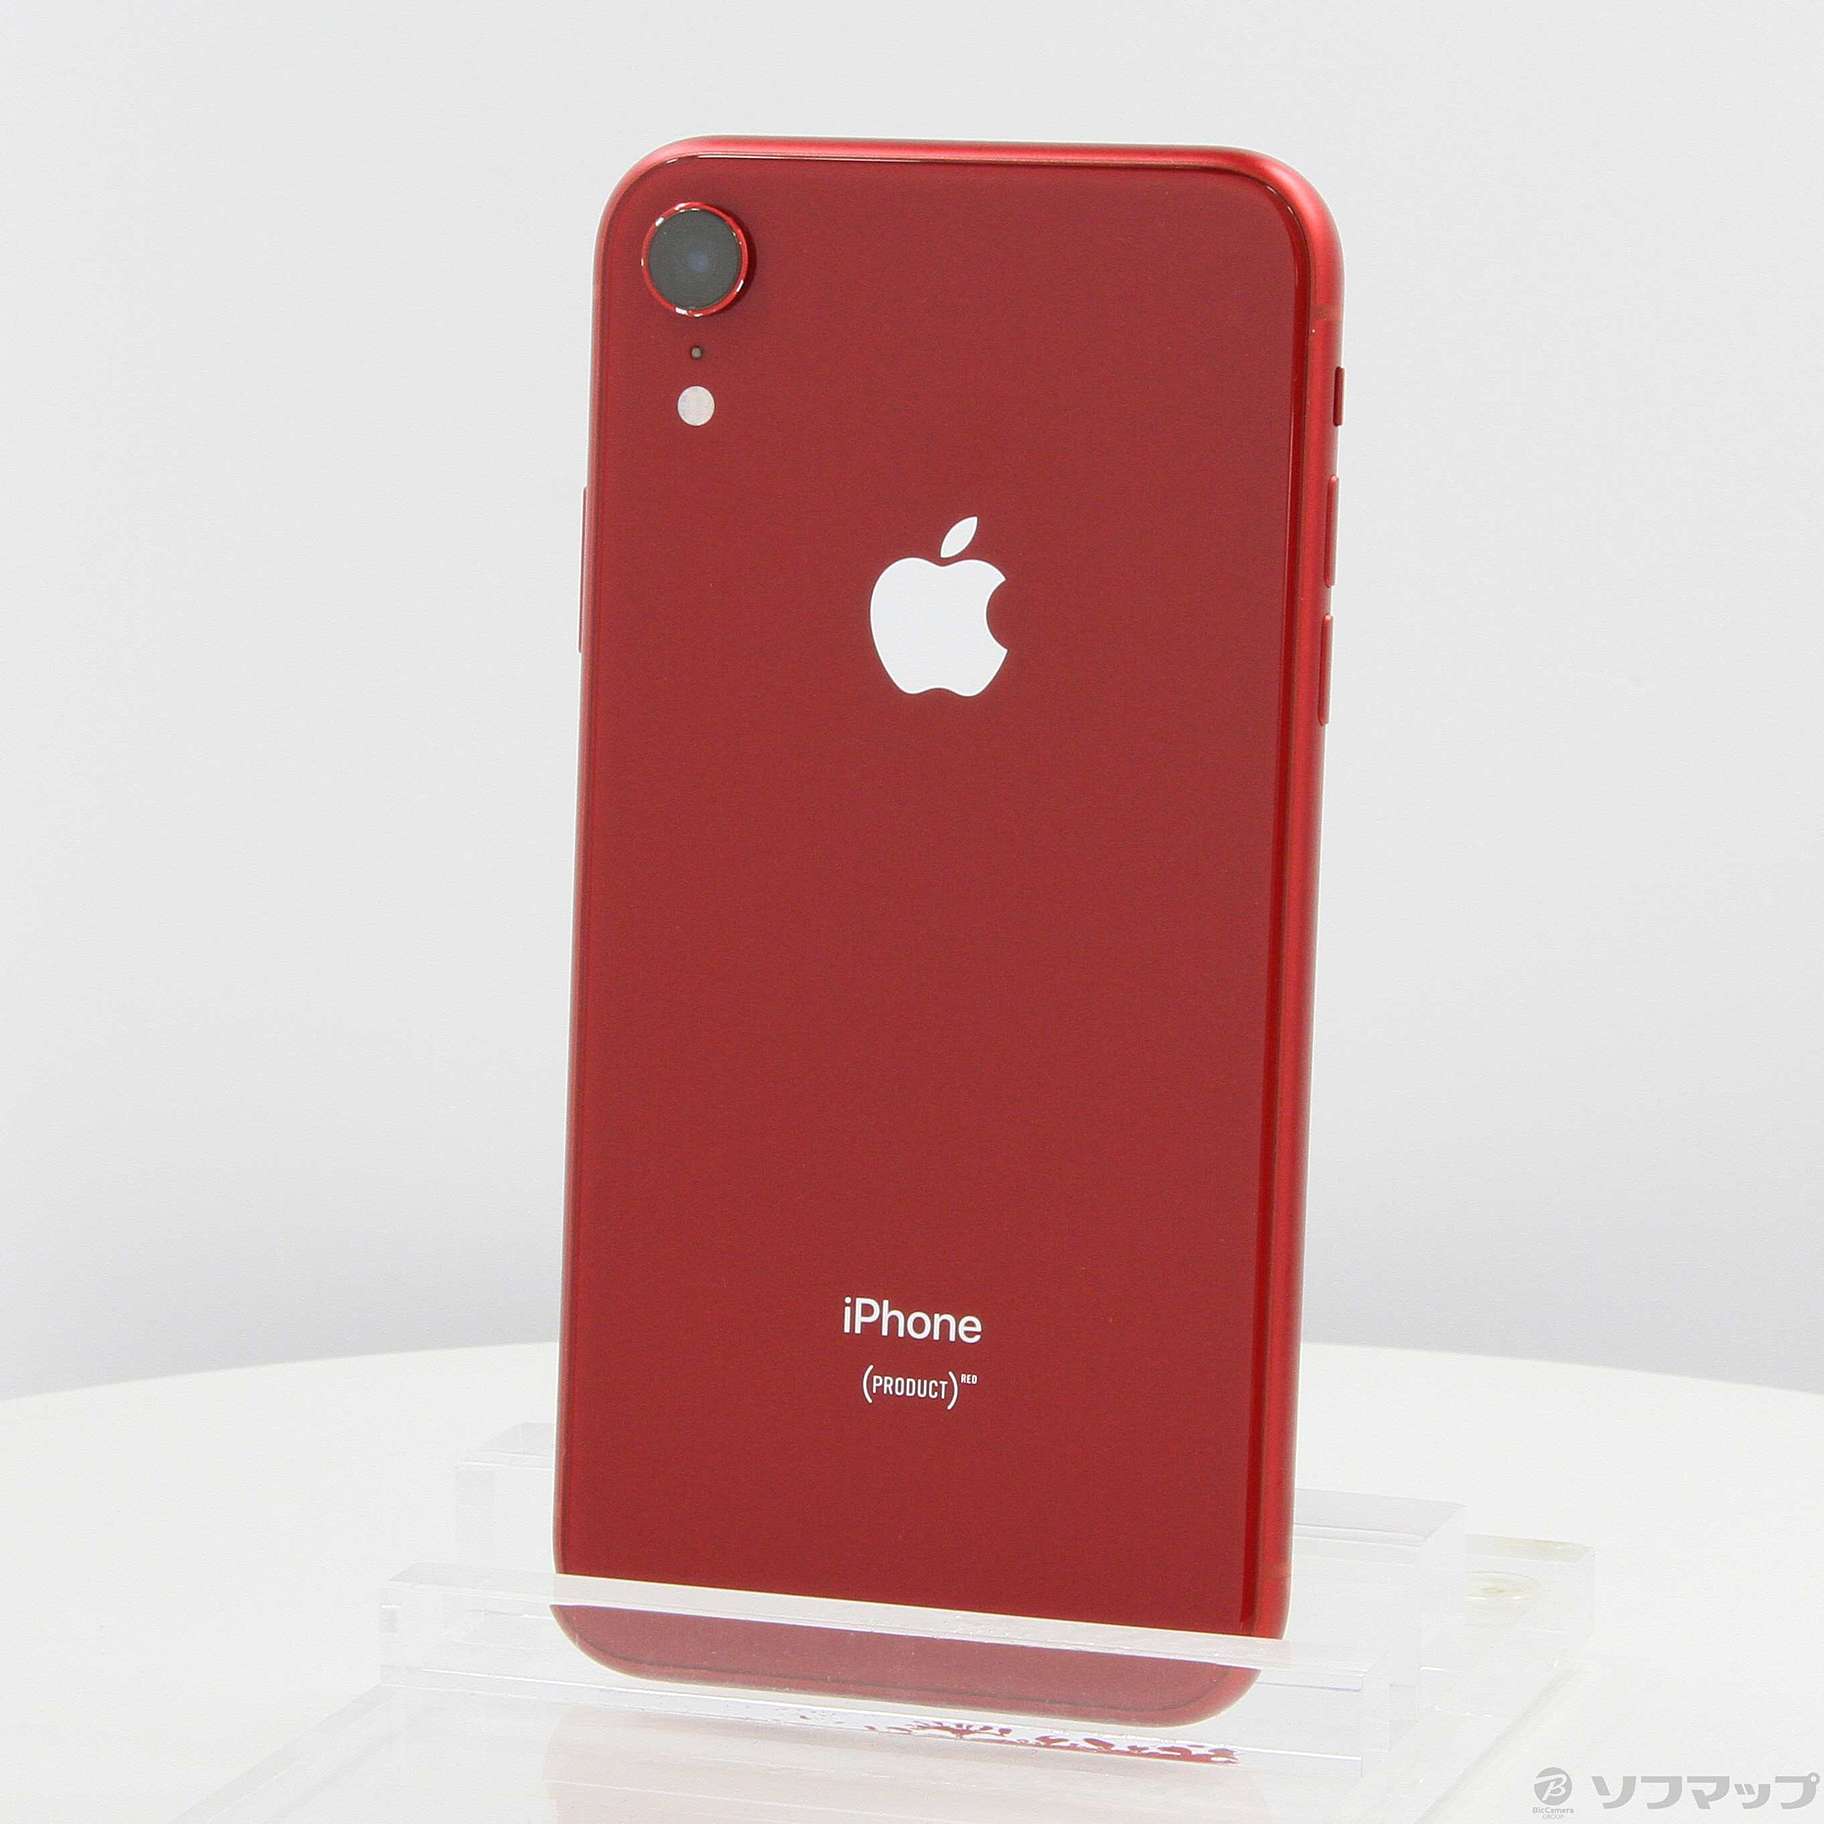 iPhone XR 128GB RED 本体 ネットワーク利用制限○ www.krzysztofbialy.com